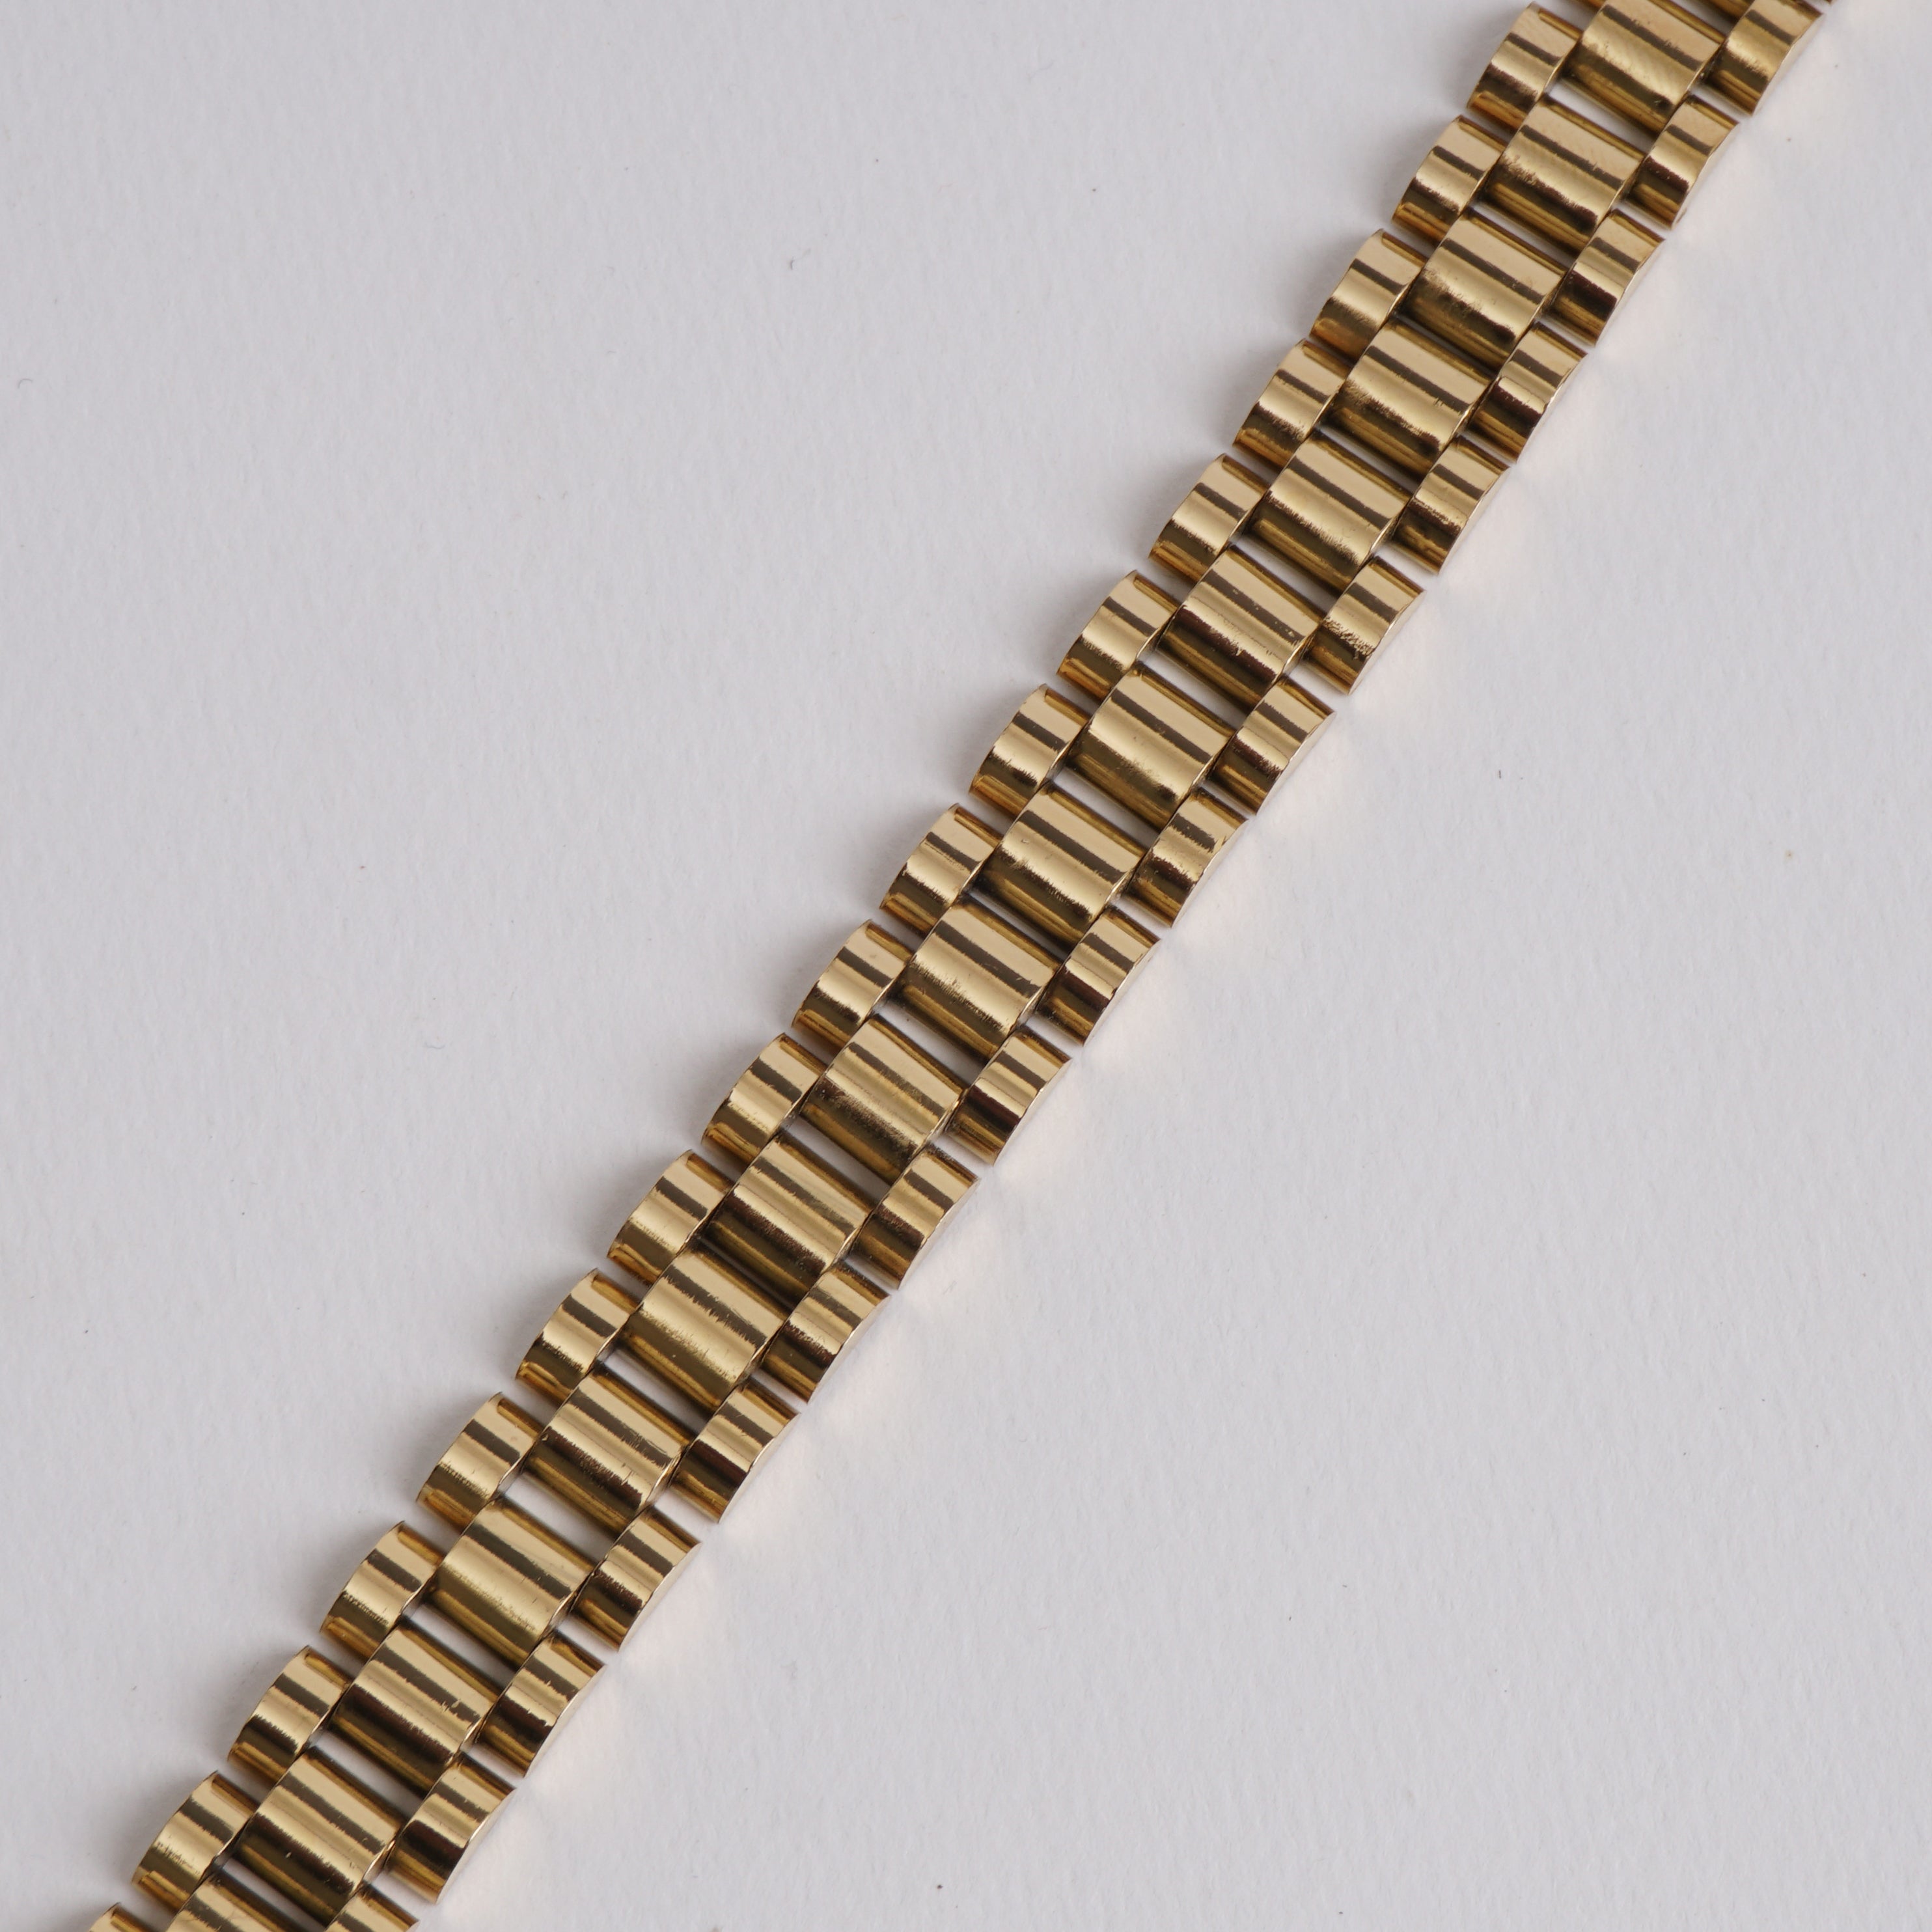 Golden Chain Bracelet For Men 12mm